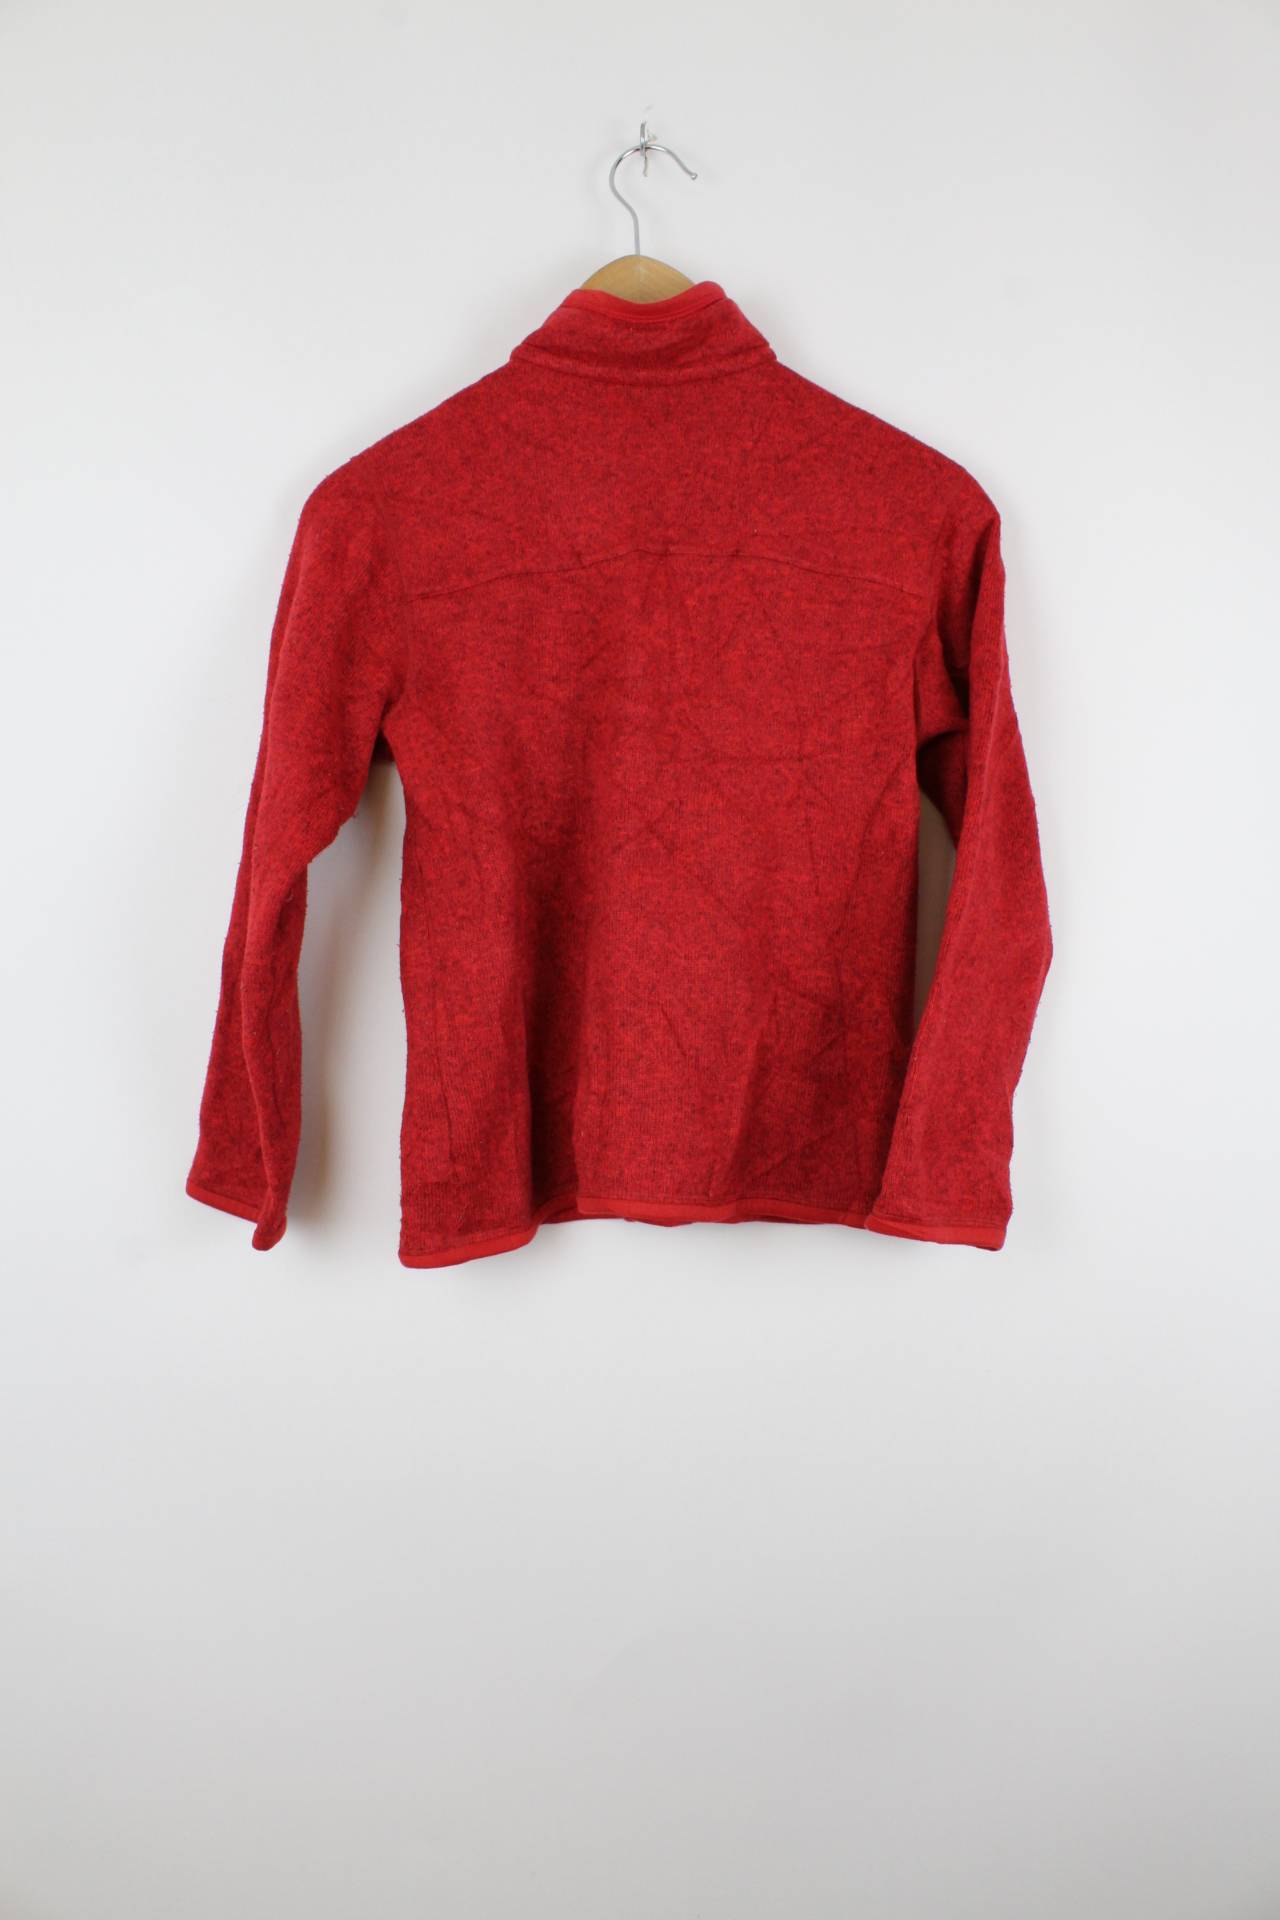 Vintage Patagonia Fleece Sweater Rot - XS